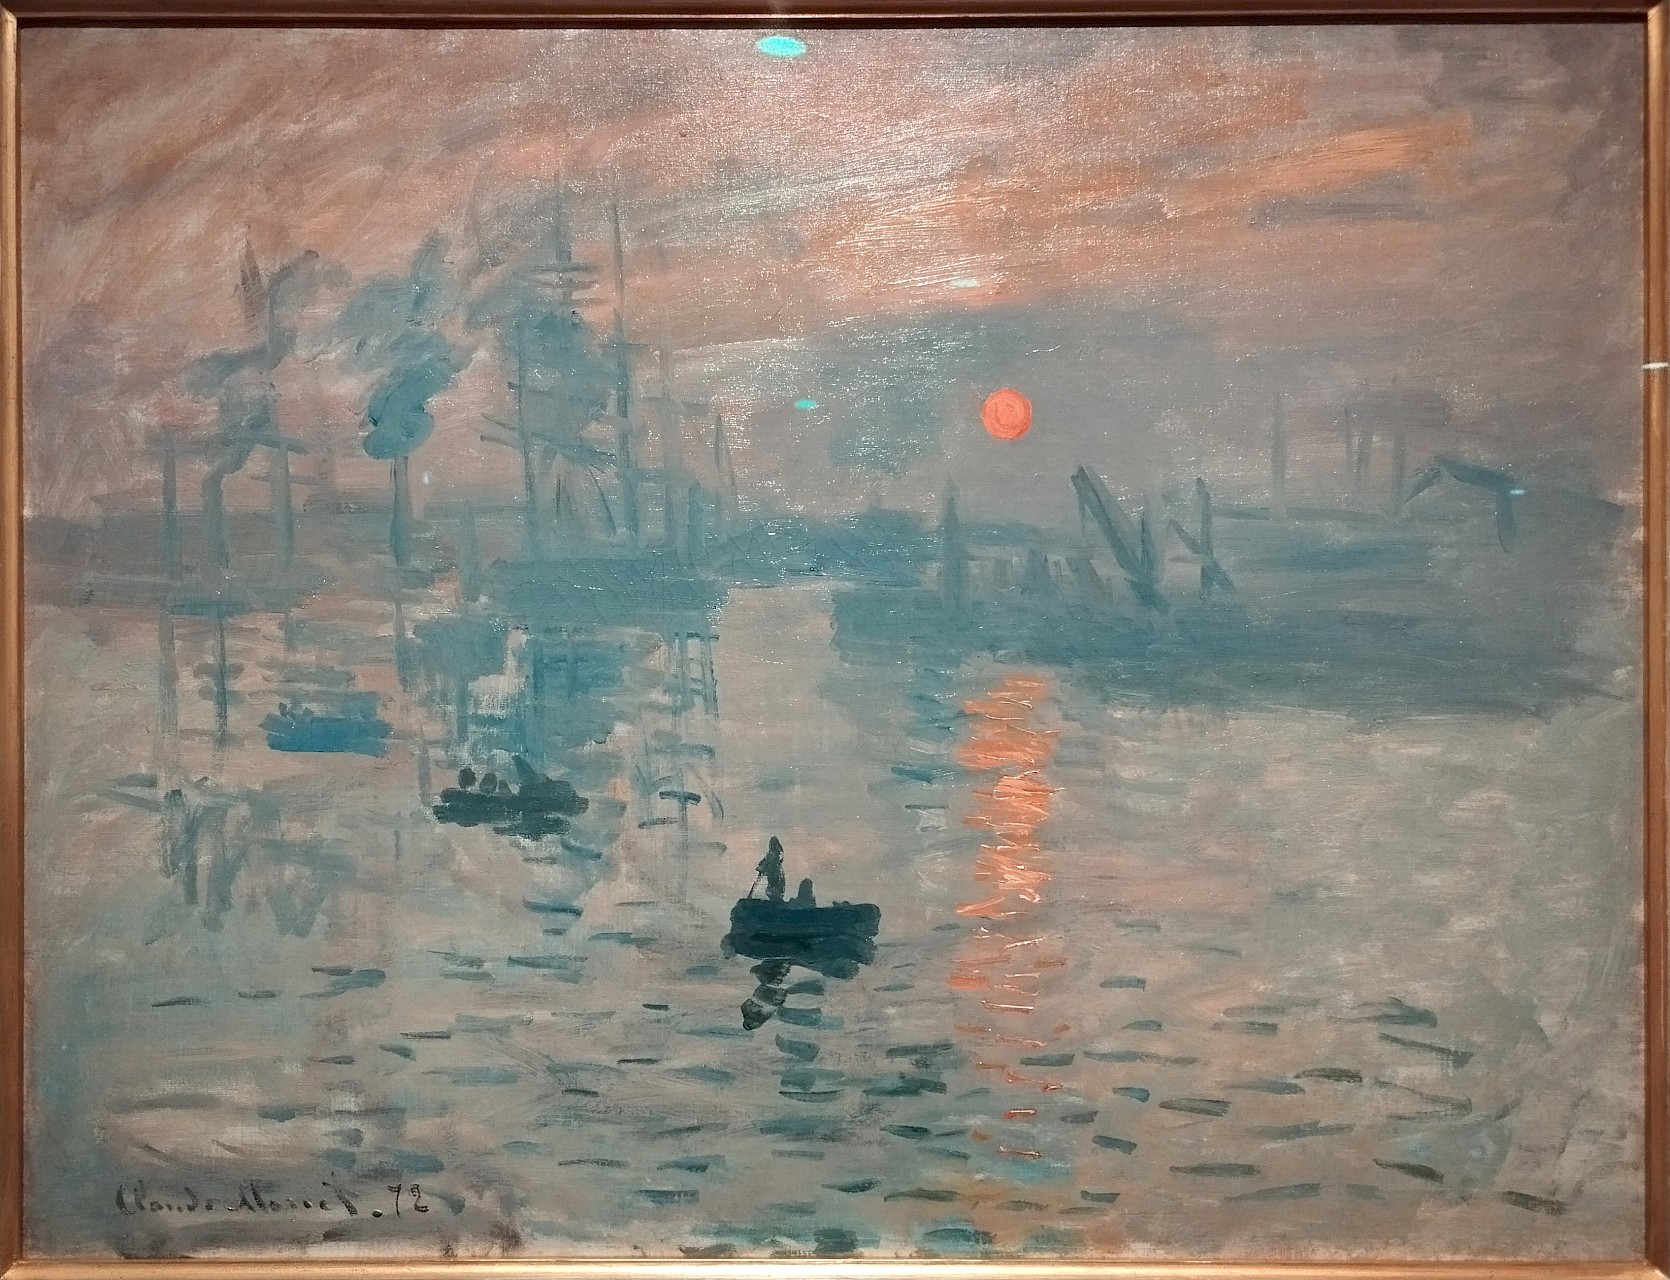 <p>Vous l'avez reconnu: <em>Impression - soleil levant. </em>En patientant quelques minutes, on peut admirer la célébrissime toile de Monet sans être bouscule, en dessert de l'expo Morisot</p>